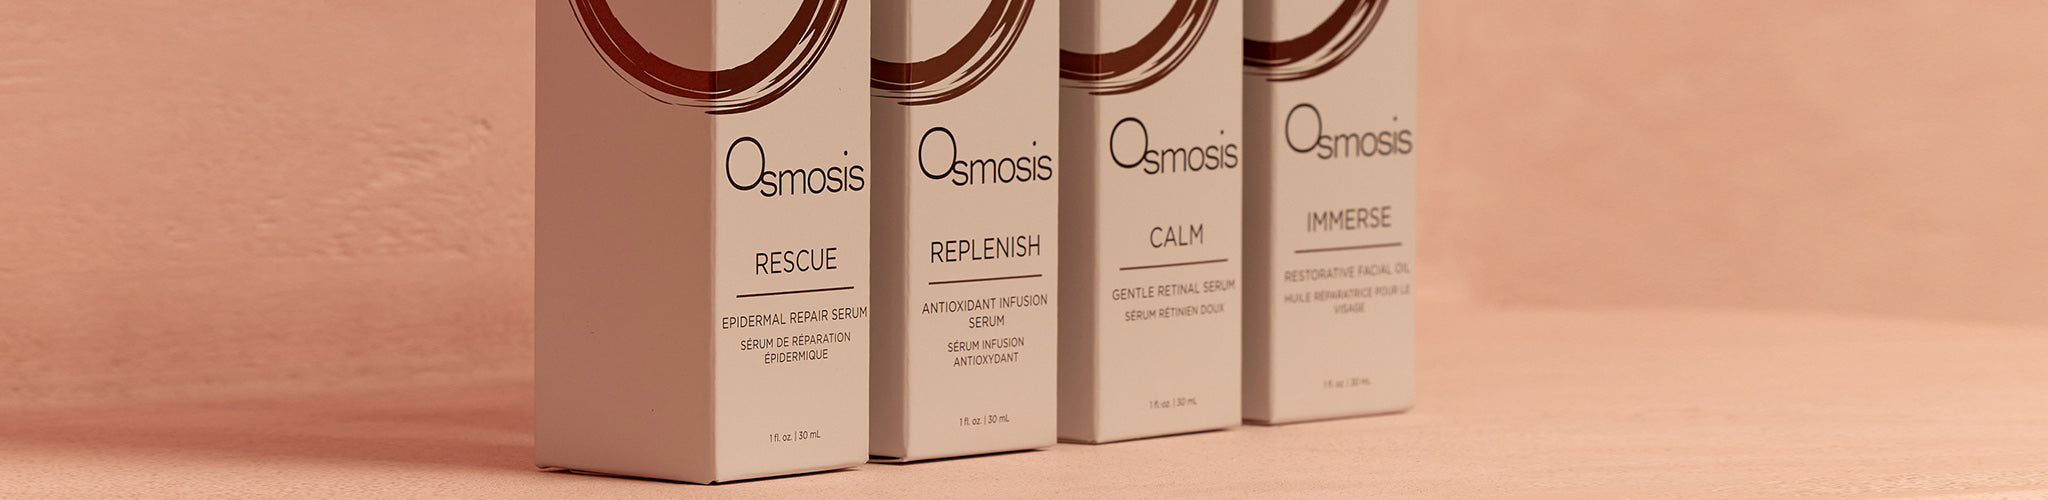 Osmosis Collection Header